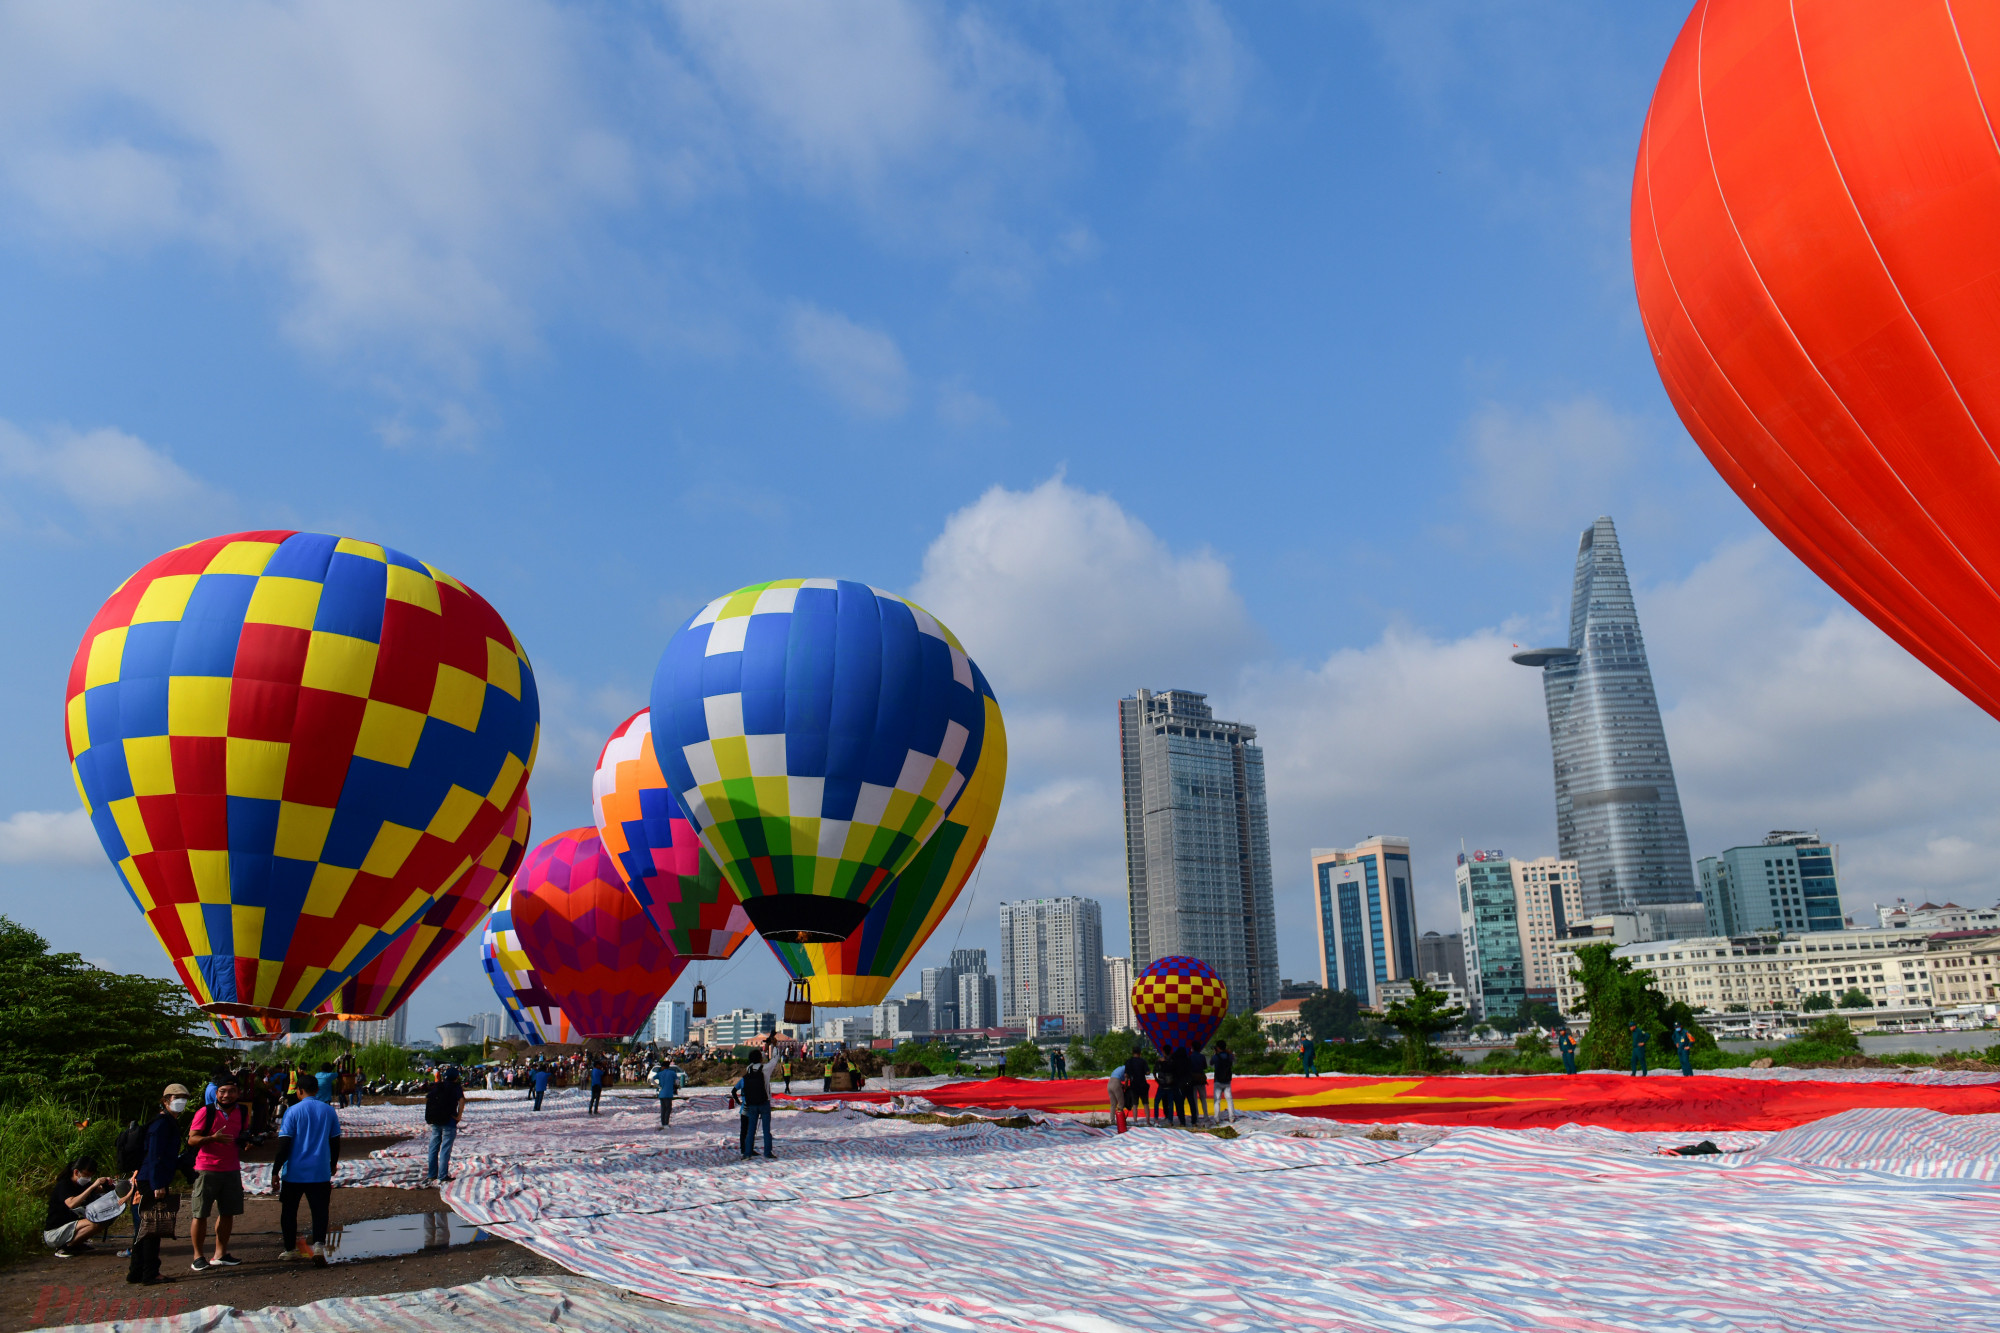 Theo đại diện Sở Văn Hóa - Thể Thao TPHCM, thả khinh khí cầu kết hợp kéo đại kỳ là một trong những hoạt động điểm nhấn của thành phố nằm trong khuôn khổ Lễ hội 'Tết Độc Lập' khai mạc vào sáng 2/9.